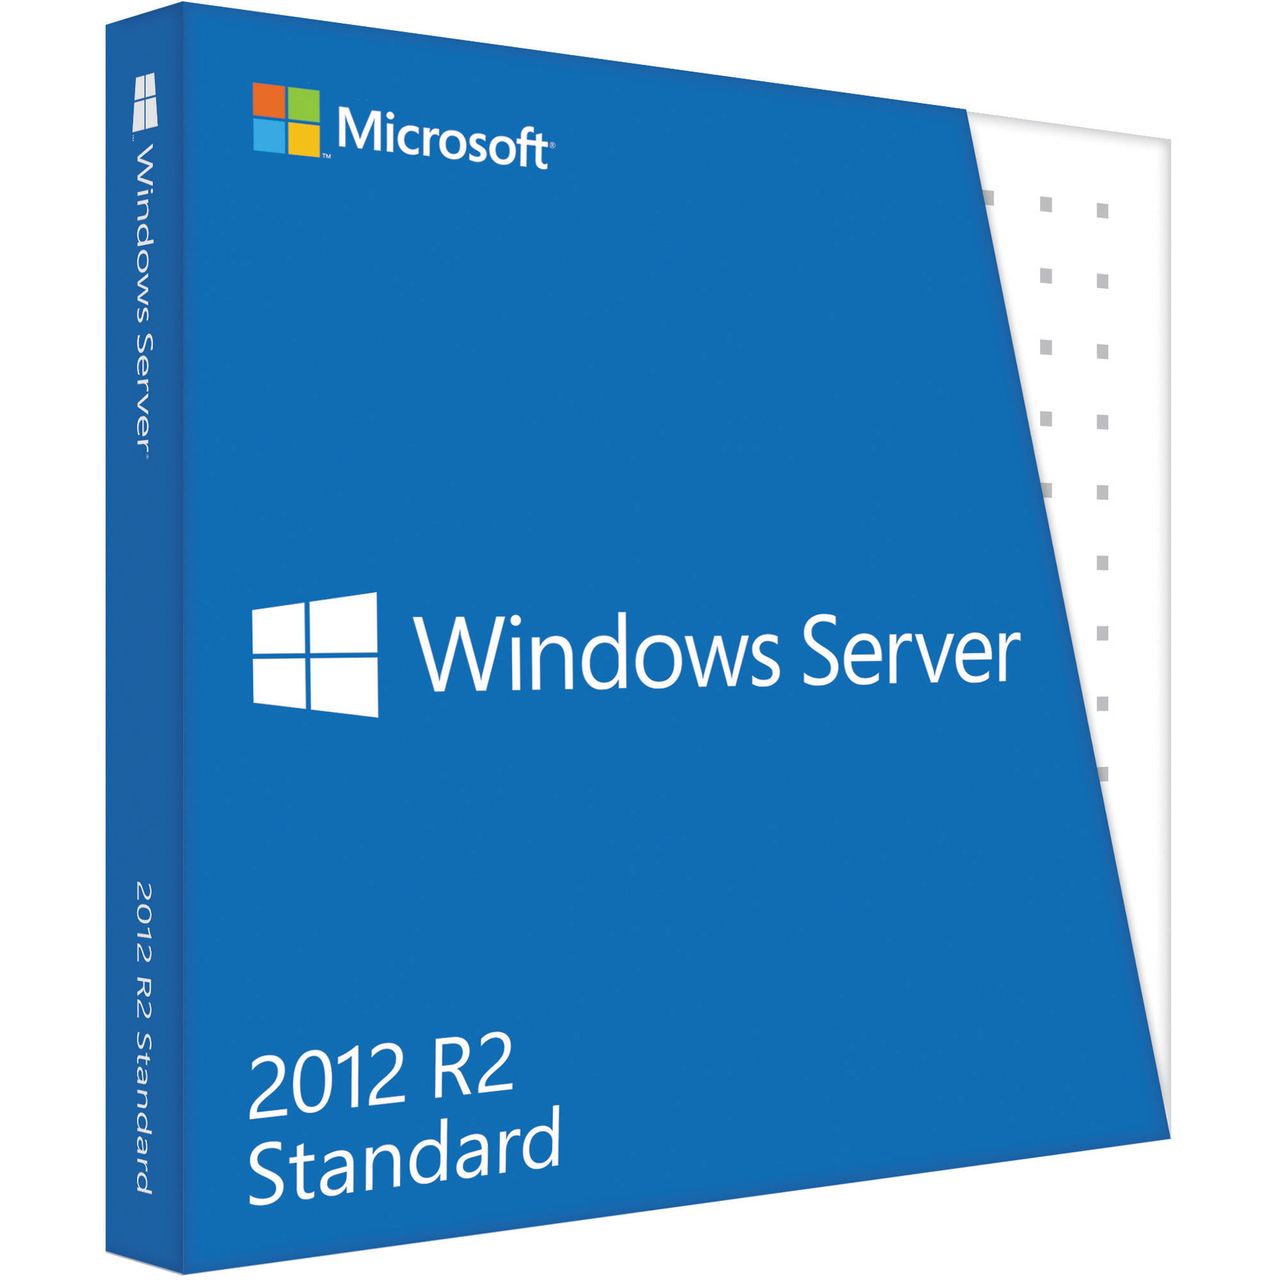 Windows Server 2012 R2: automatyzuje niemal wszystko, ale tworzy nowe, absurdalne problemy